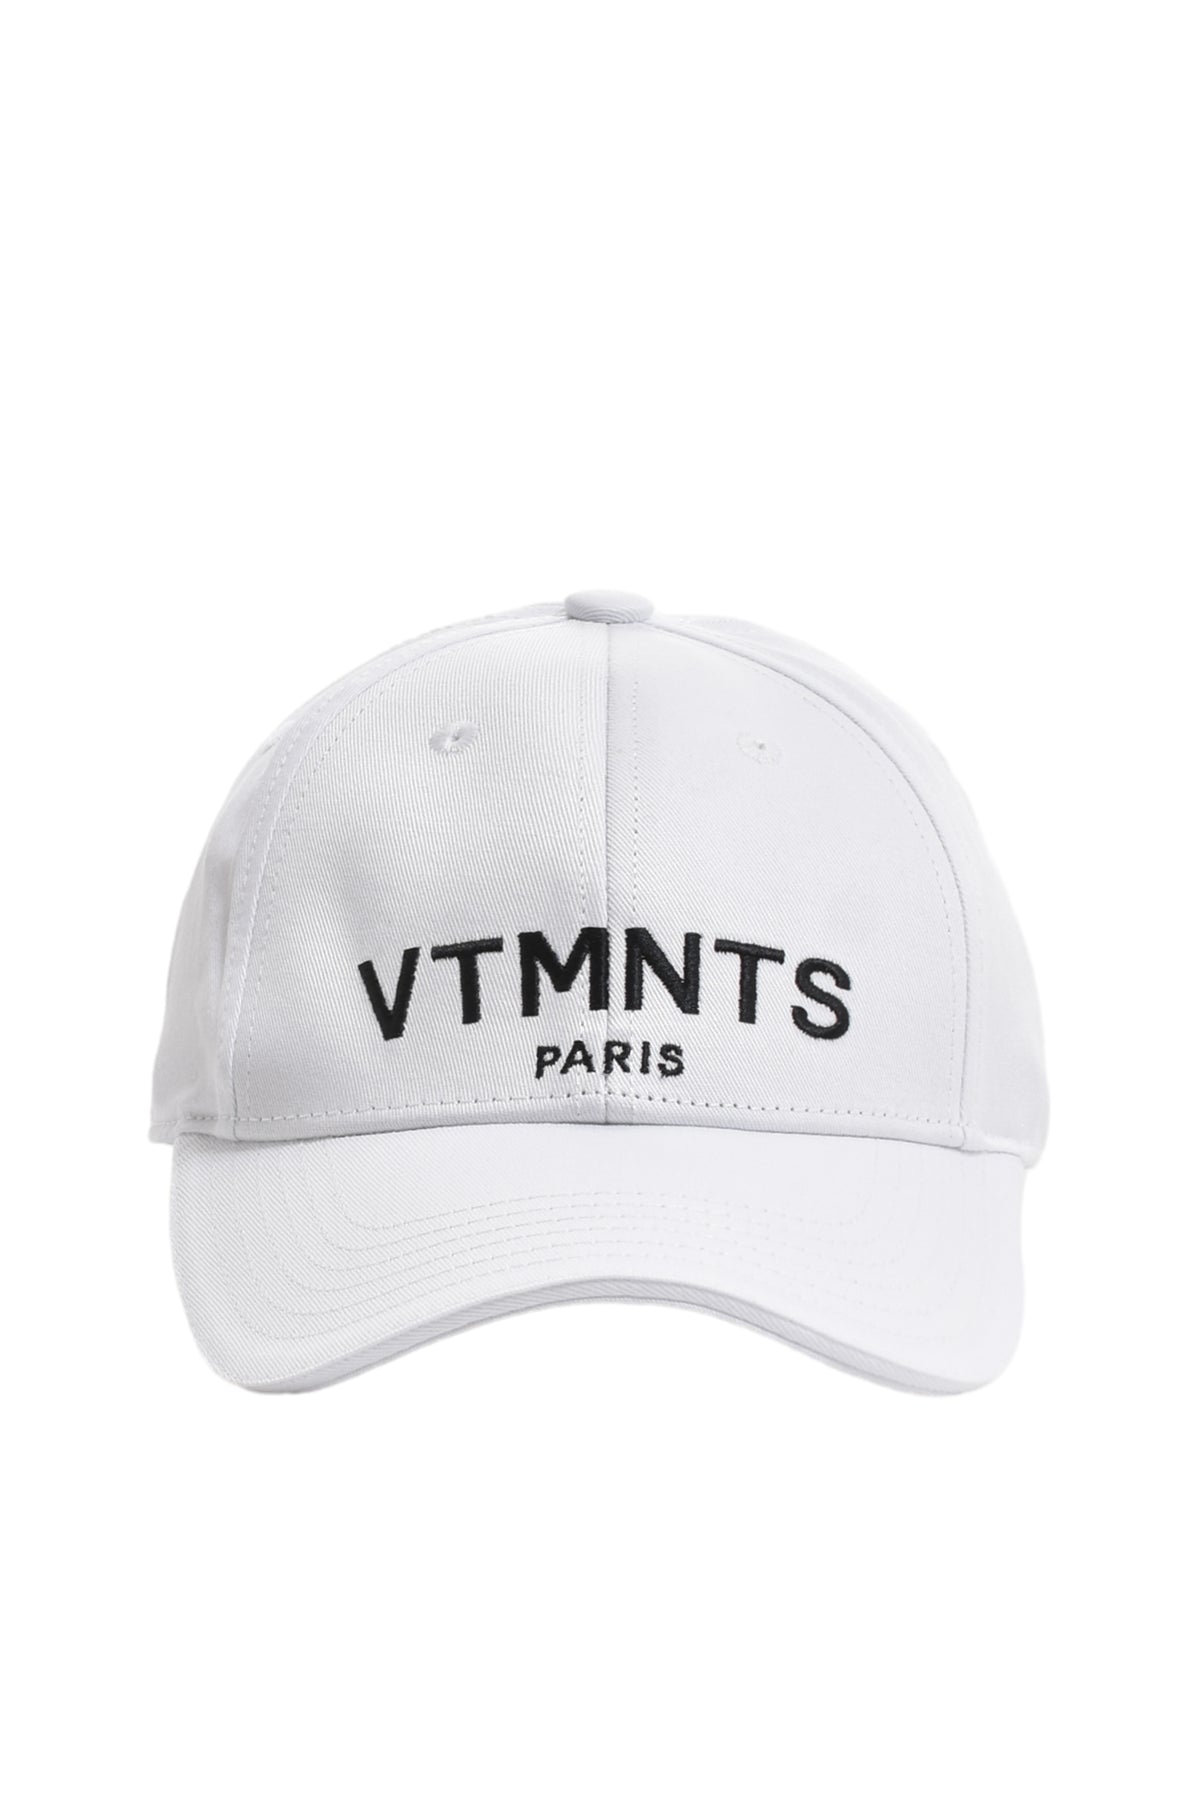 VTMNTS VTMNTS PARIS LOGO CAP / WHT BLK